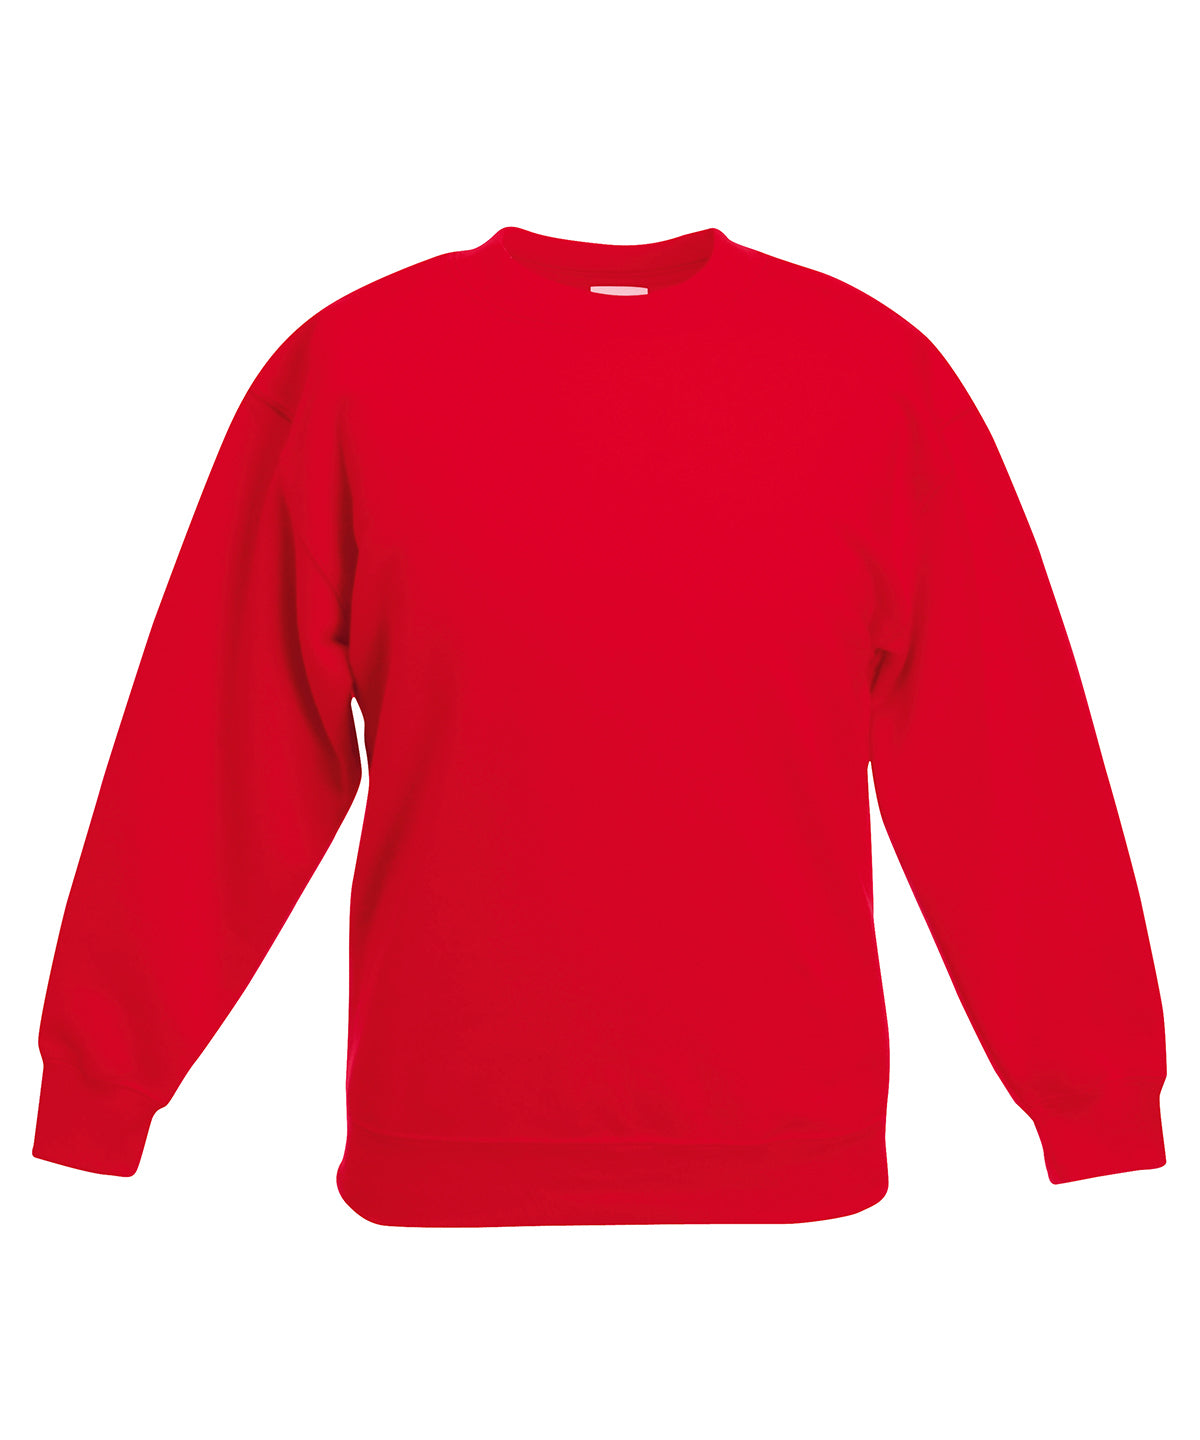 Personalised Sweatshirts - Bottle Fruit of the Loom Kids premium set-in sweatshirt